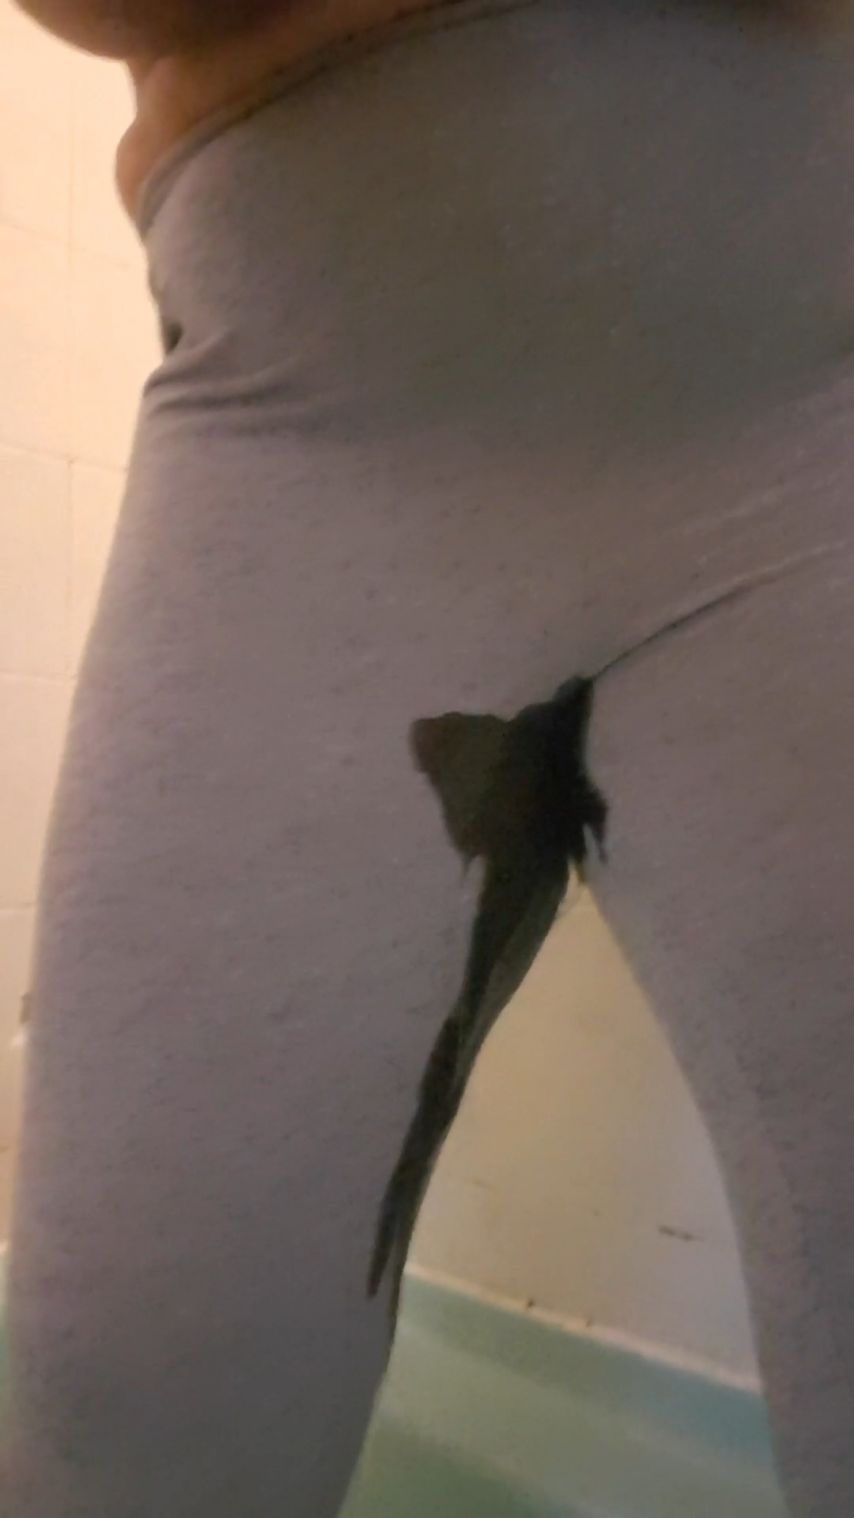 Peeing and masturbating through leggings